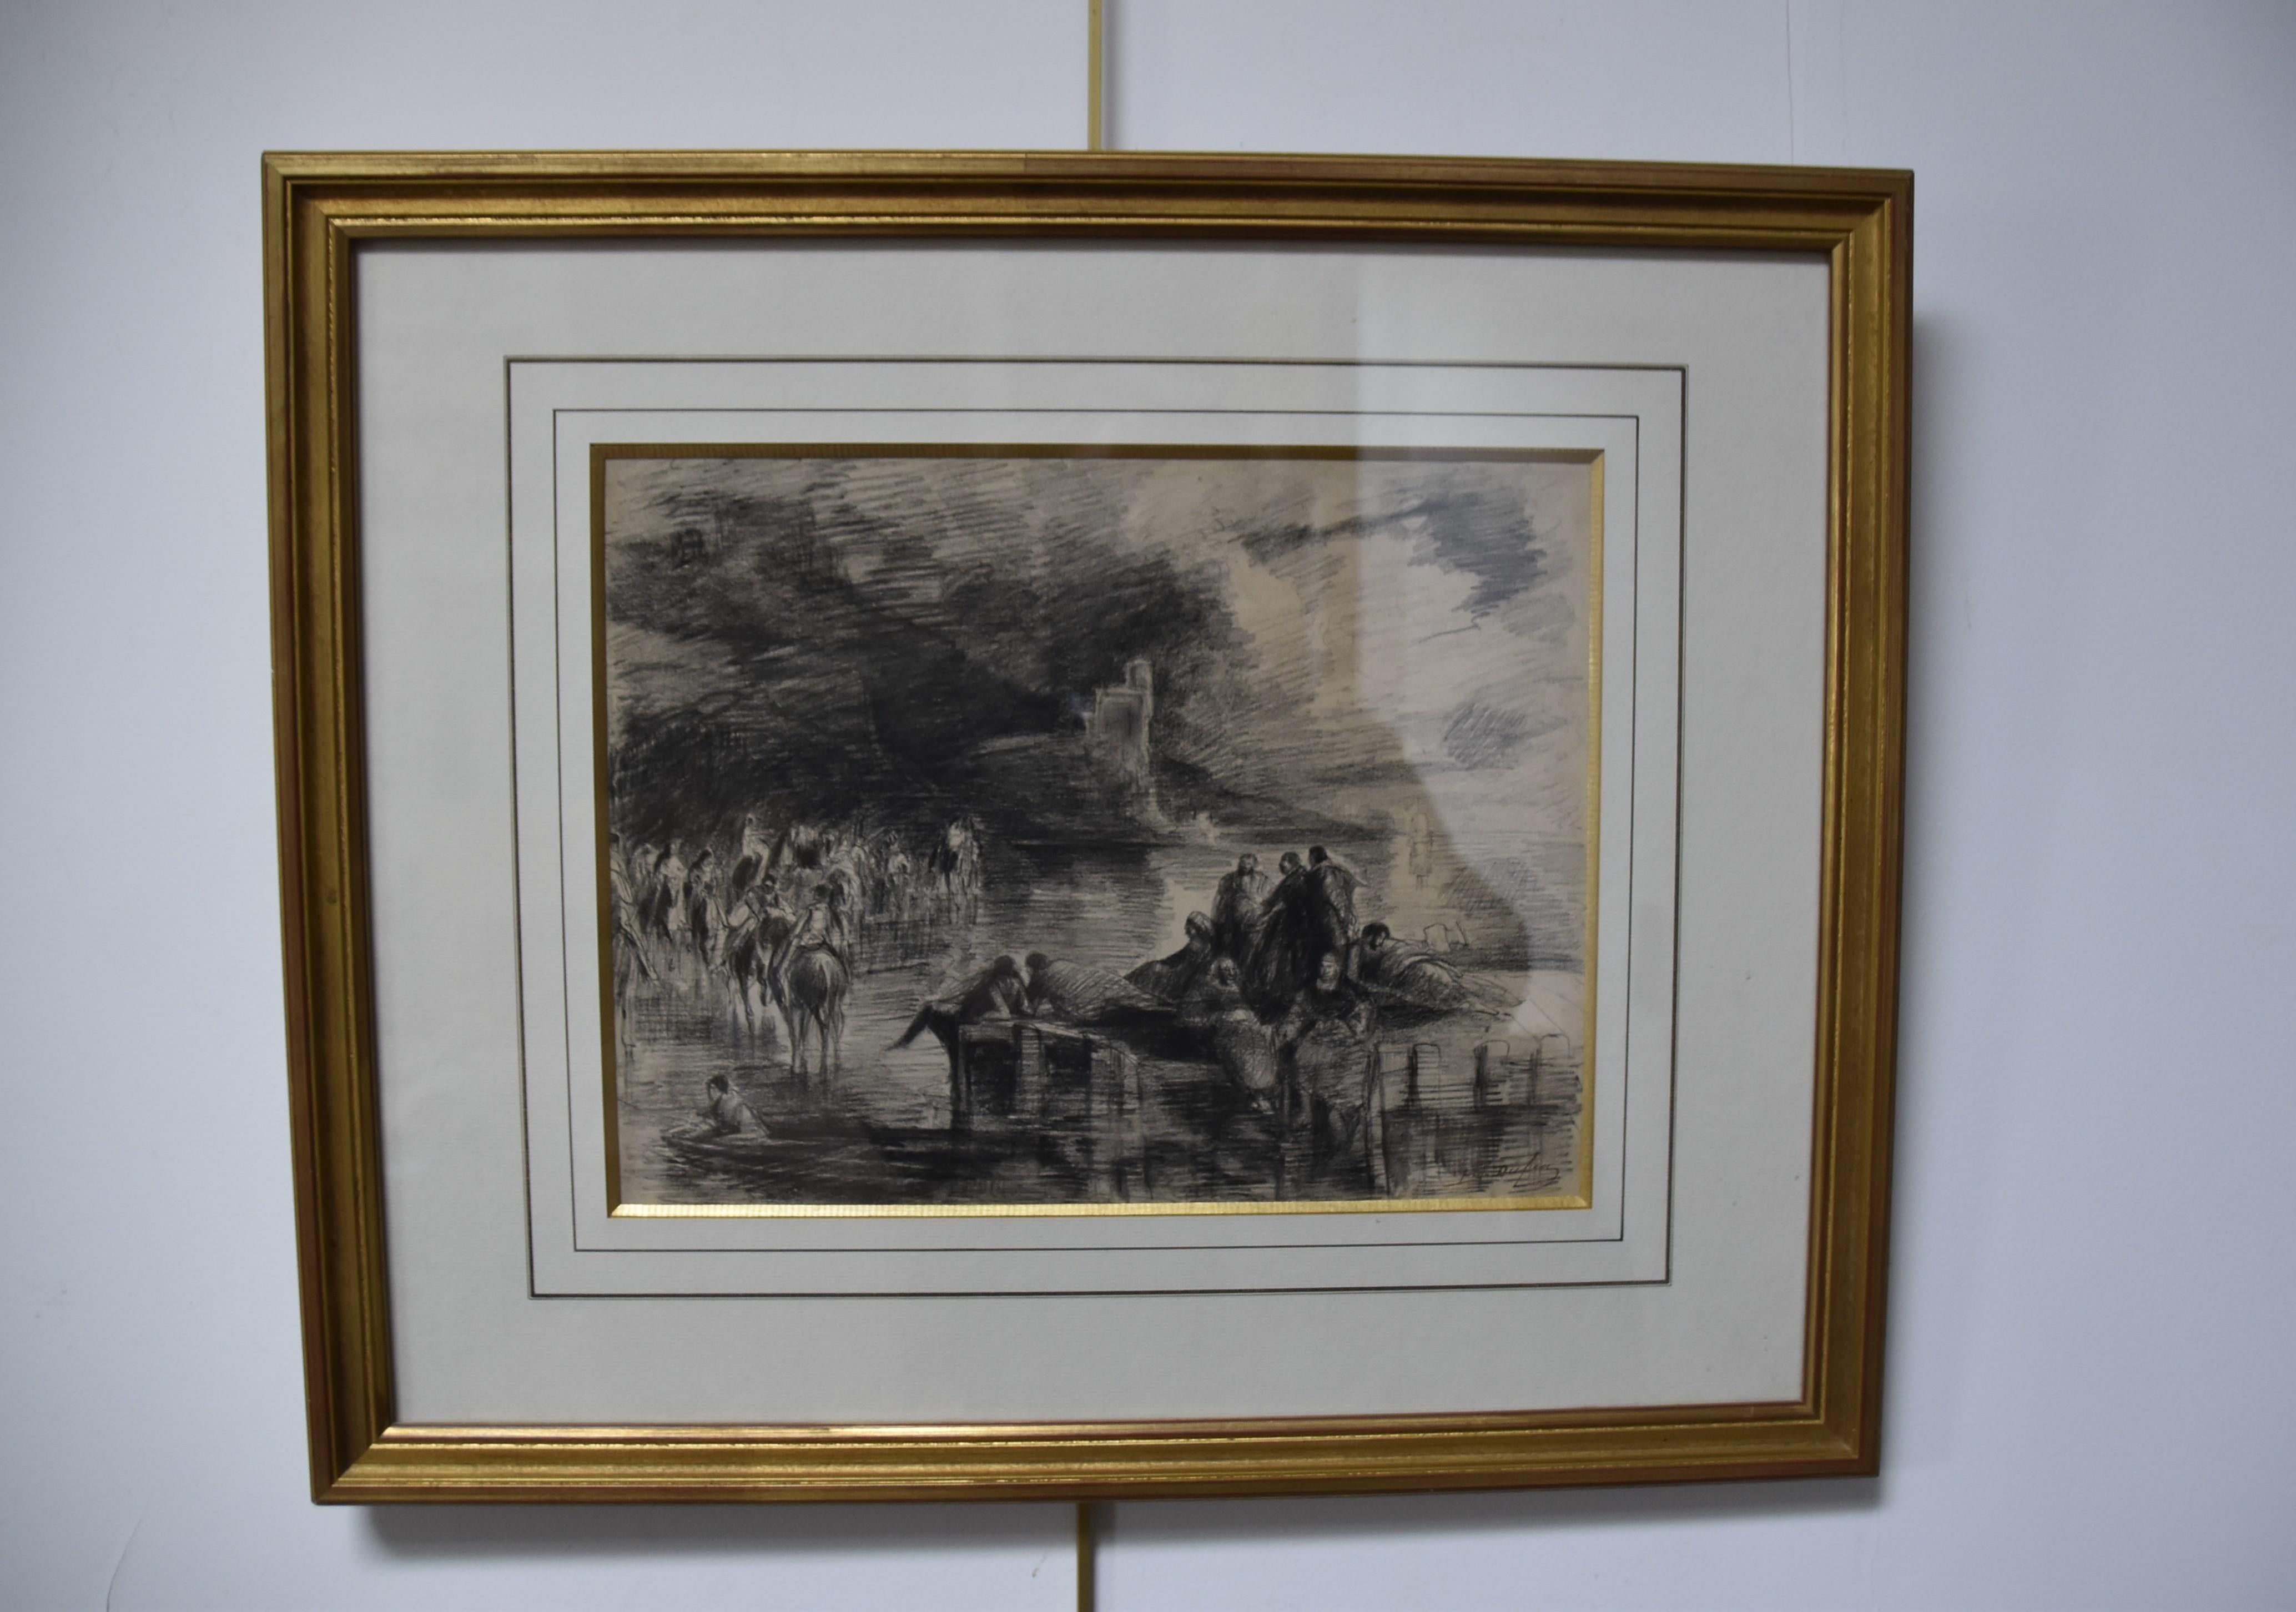 Edouard Dufeu (1836-1900)  
Une scène fantastique au bord d'un lac
Fusain sur papier
Signé en bas à droite
23 x 30,5 cm
Encadré sous verre : 42,5 x 51 cm

Cette scène fantastique, dont le sujet reste mystérieux, révèle un aspect de la personnalité